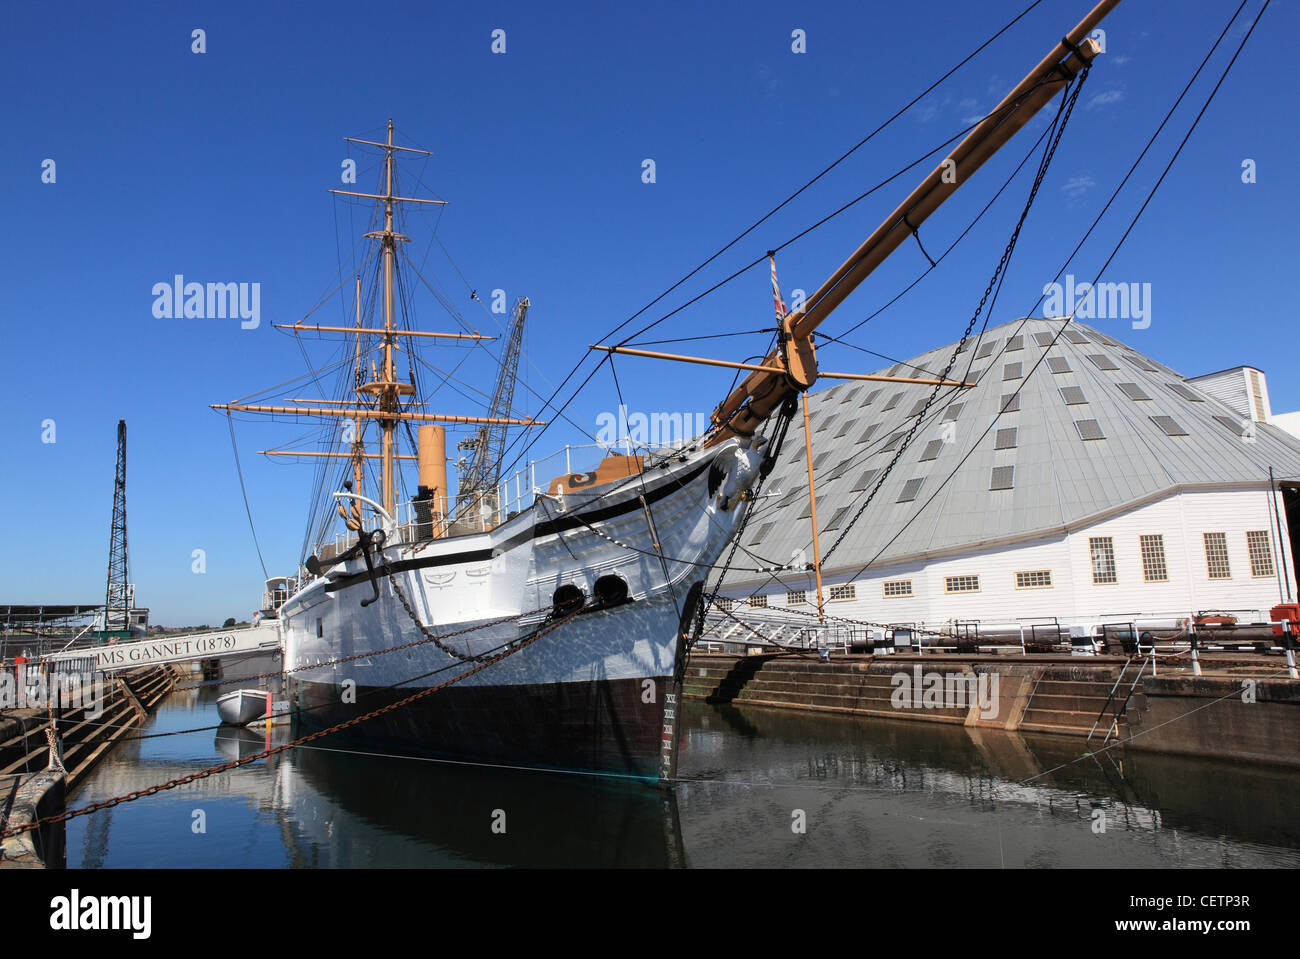 Le chantier naval historique, Chatham, Kent, où les visiteurs peuvent retracer l'histoire de la Royal Navy Banque D'Images